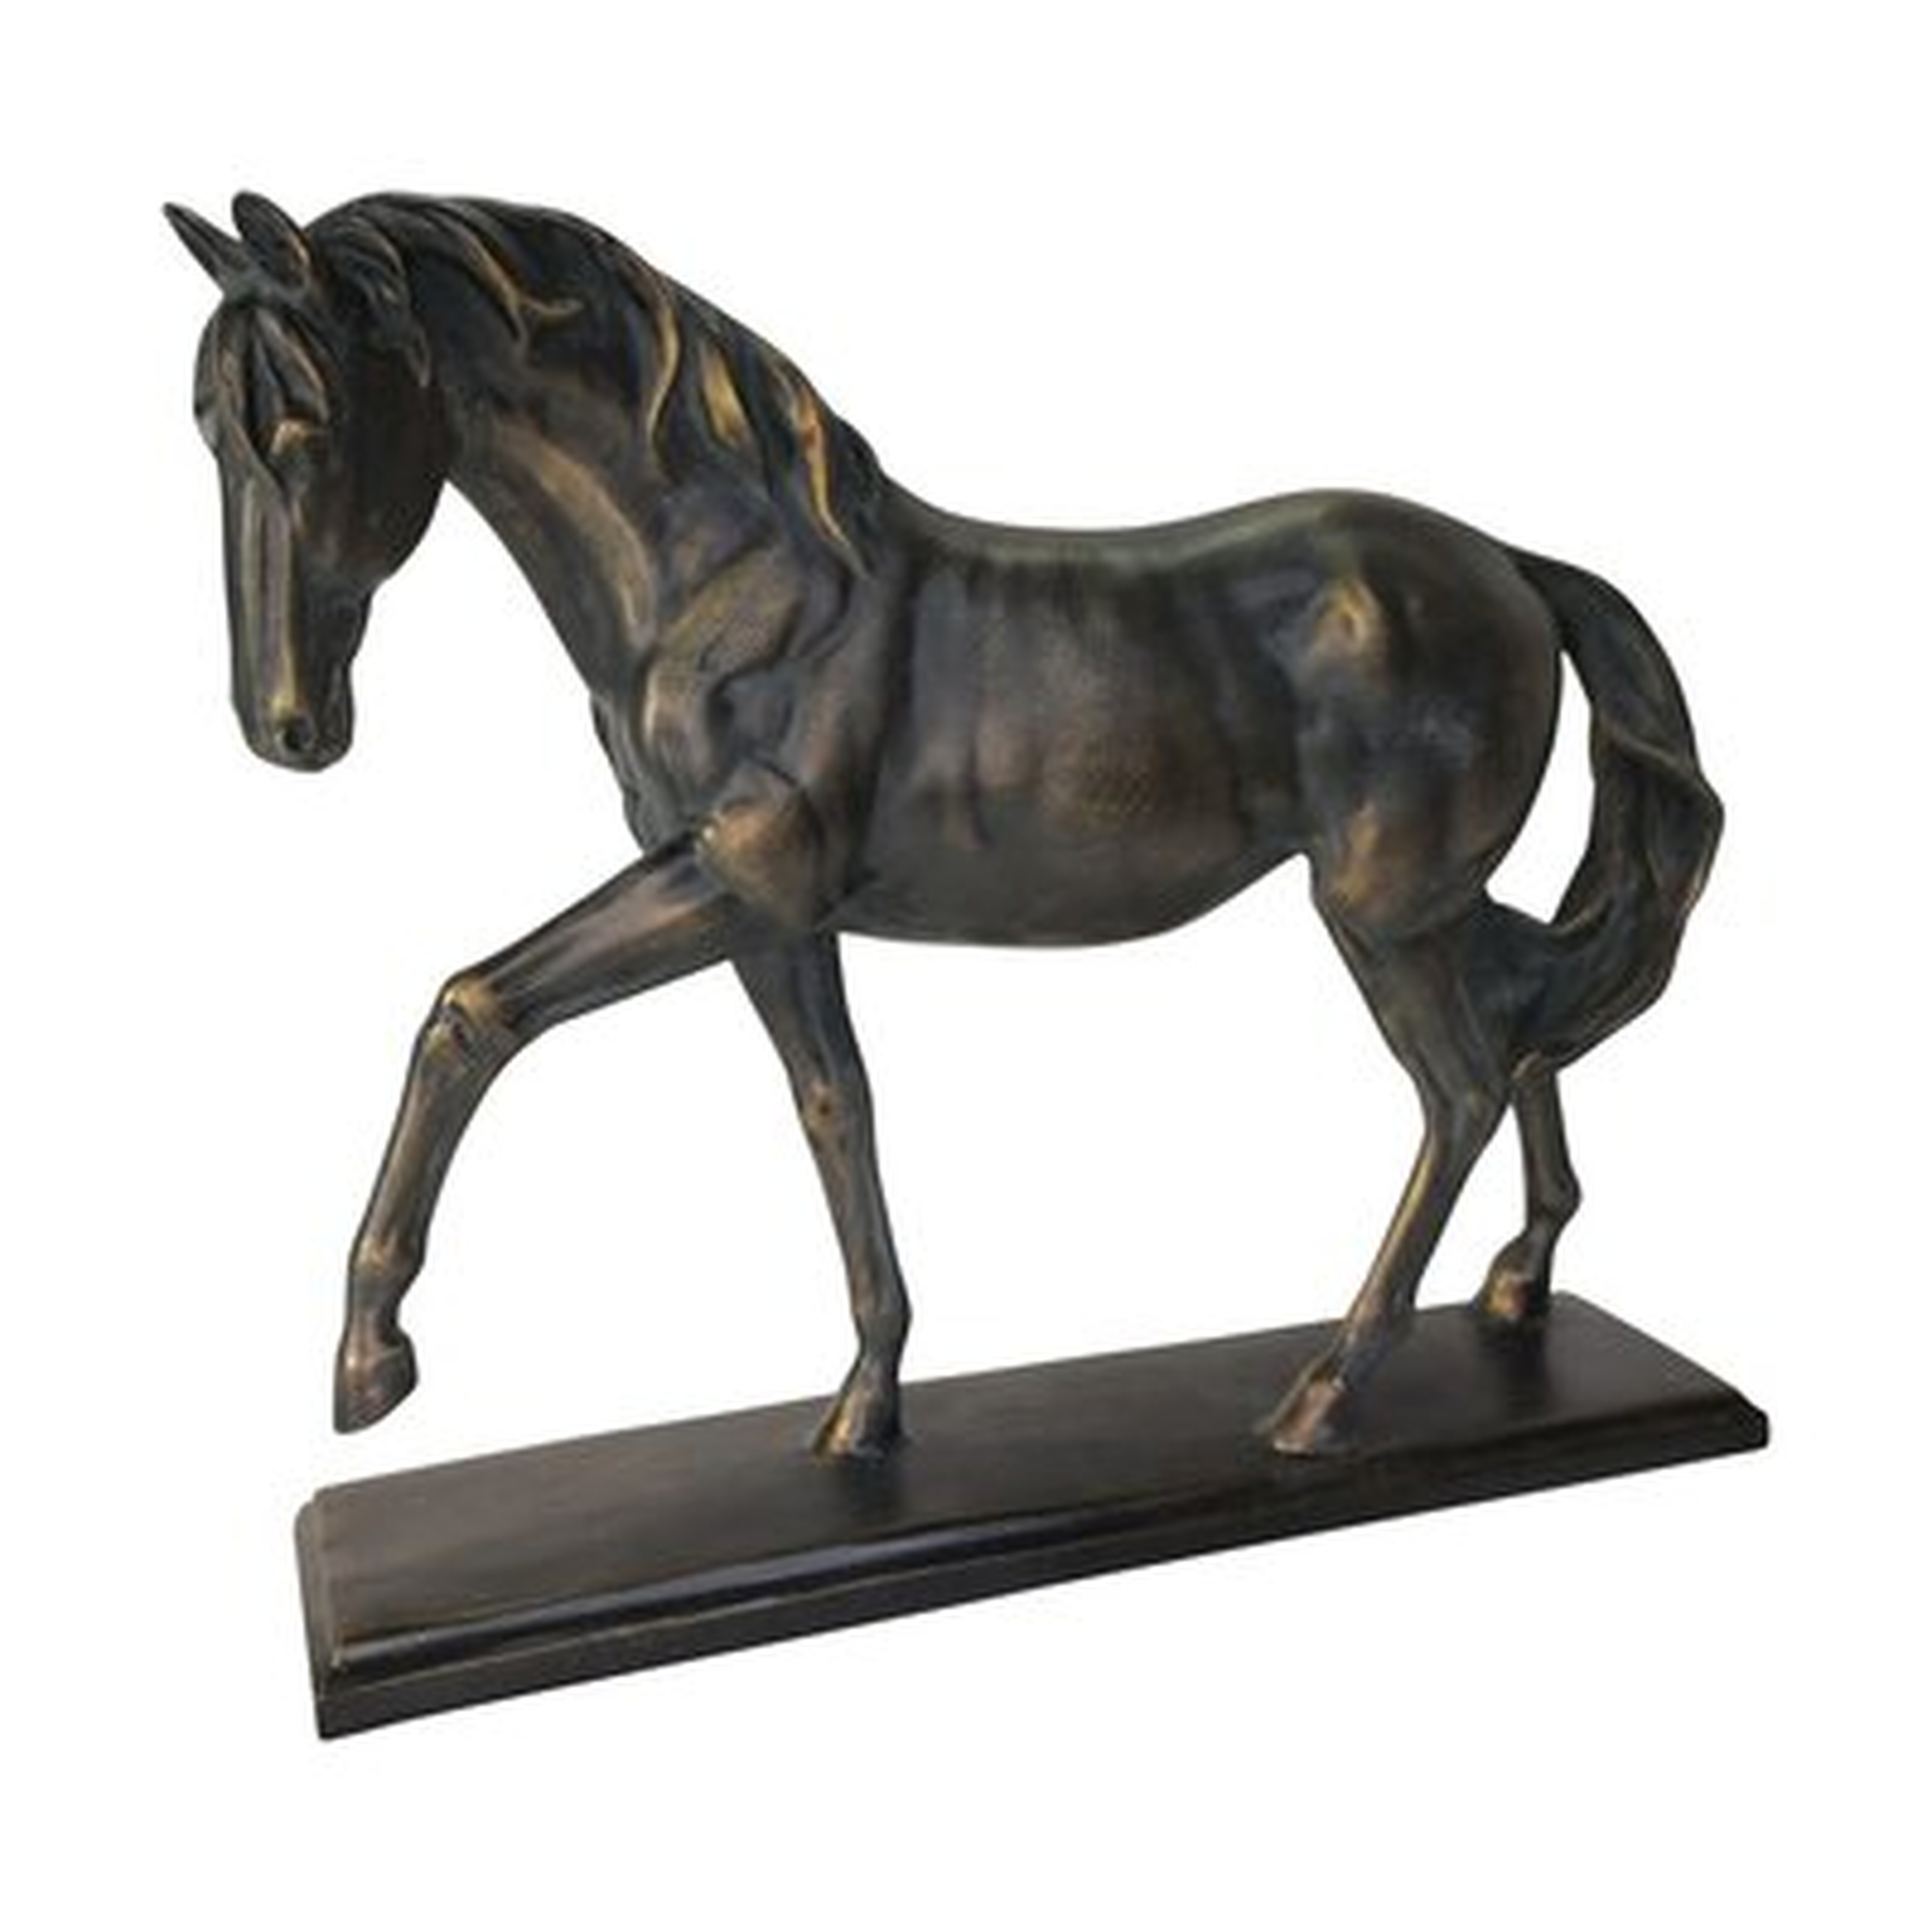 Mui Horse Sculpture - Wayfair